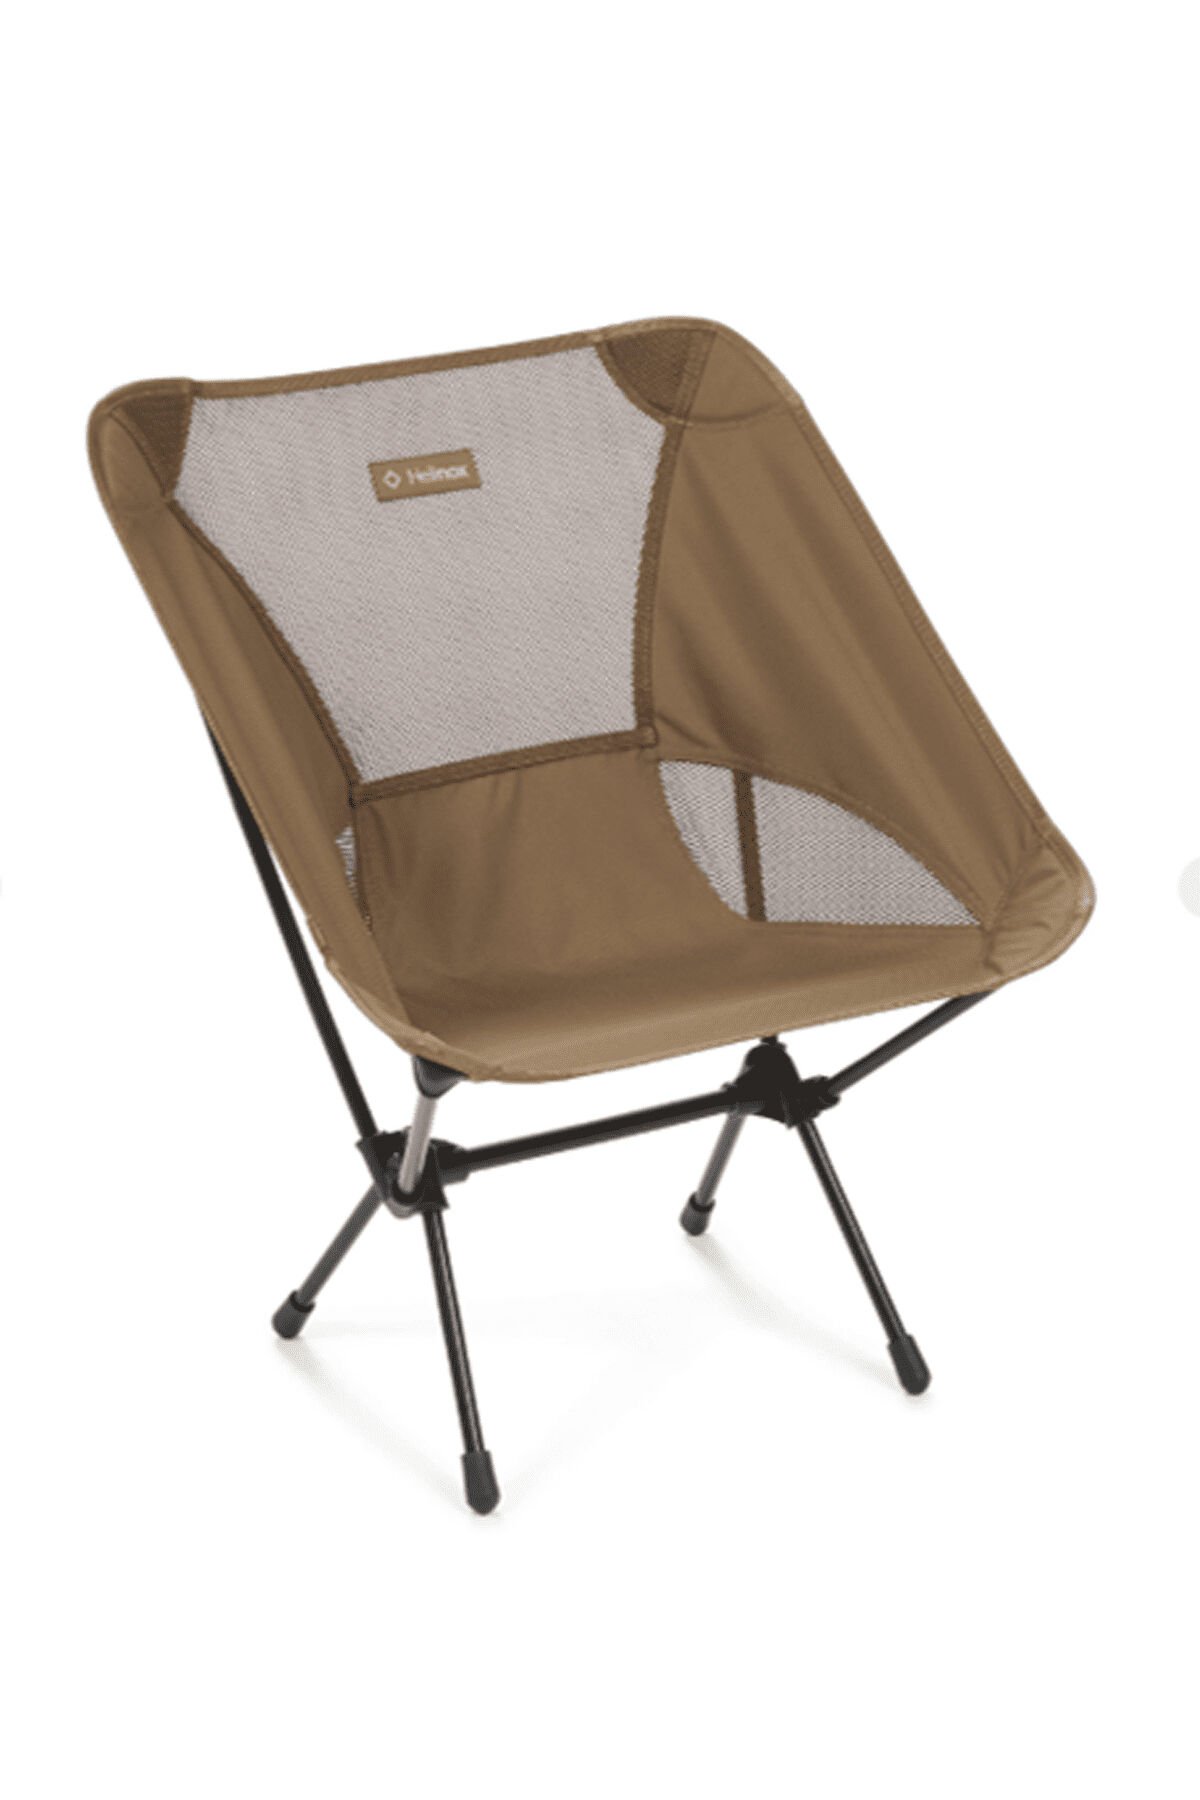 Helinox Chair One Outdoor Kamp Sandalyesi Coyote Tan